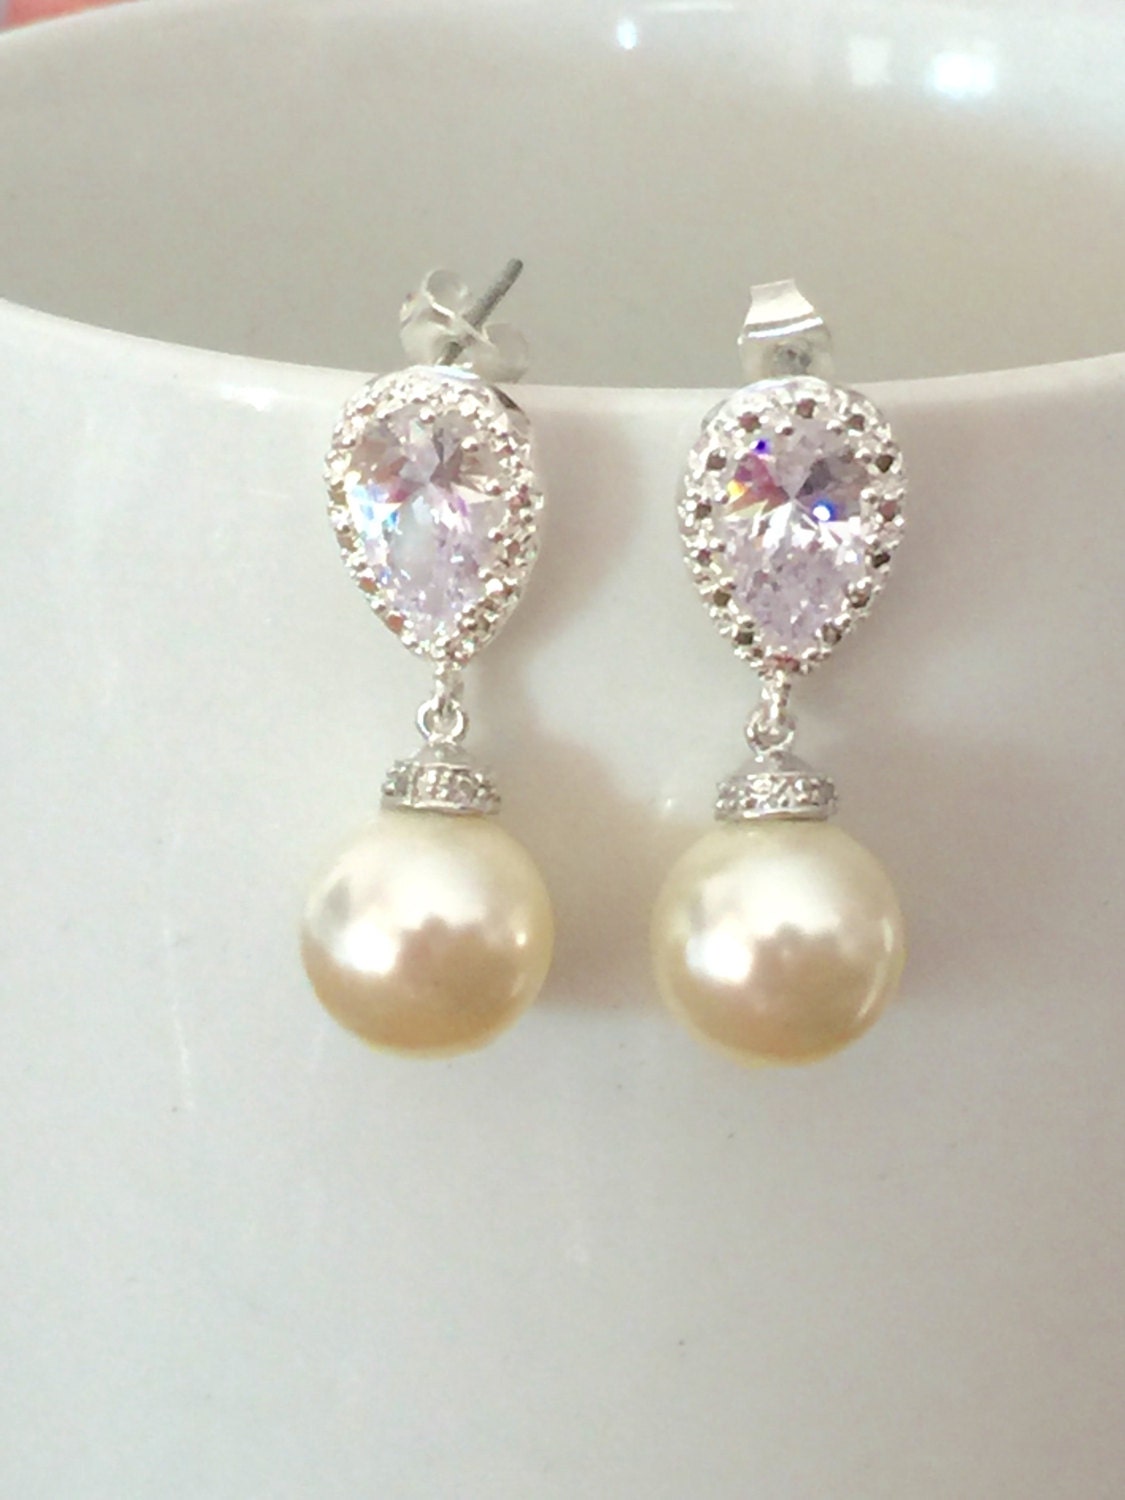 Pearl and crystal dangle earrings, swarovski pearl earrings, wedding jewelry, pearl earrings, bridal earrings